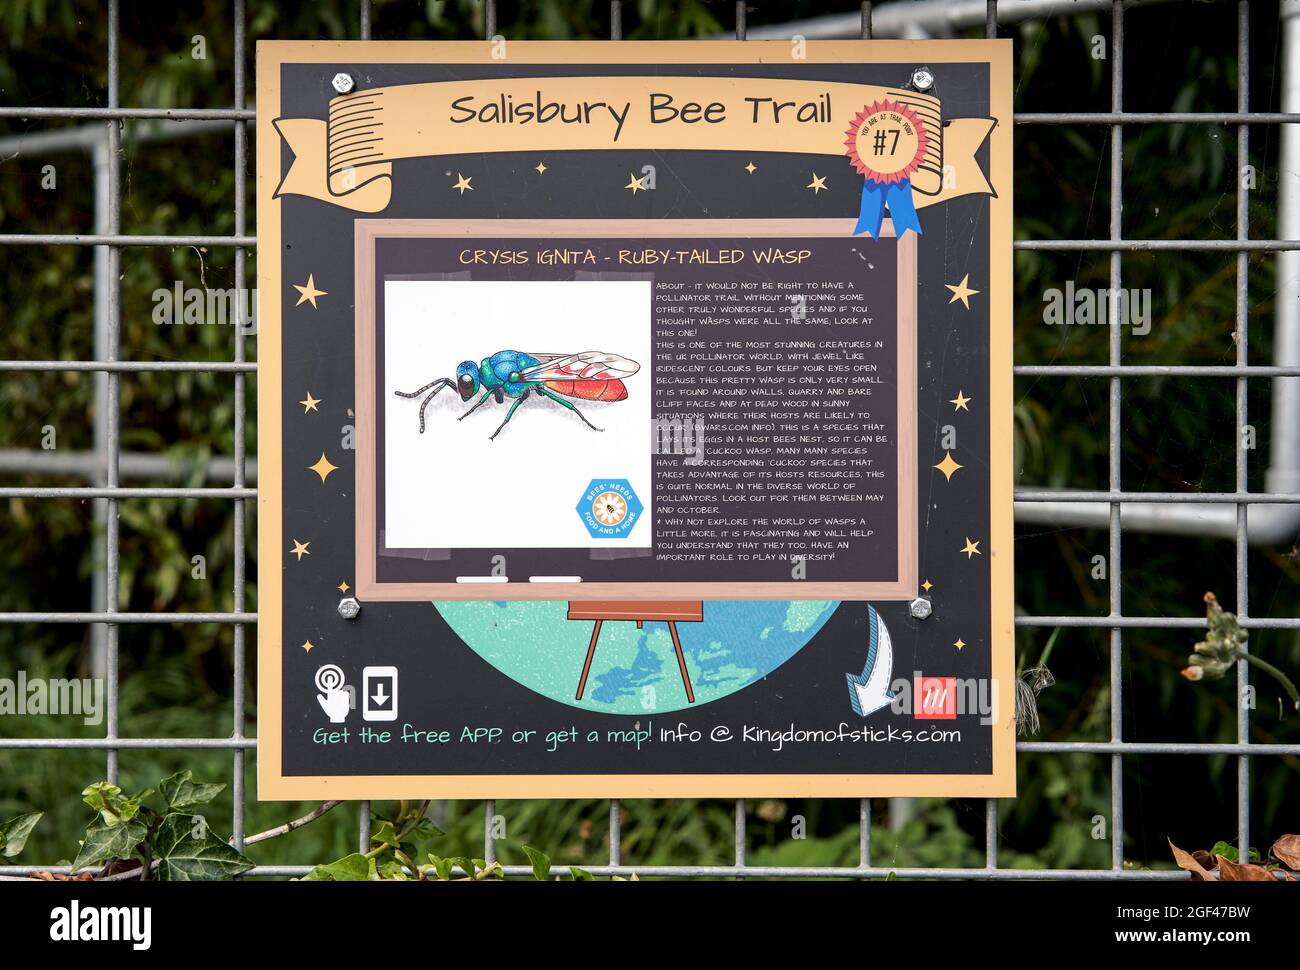 Salisbury Bee Trail signo con una ilustración de una cola de rubí Wasp Crysus ignita Foto de stock